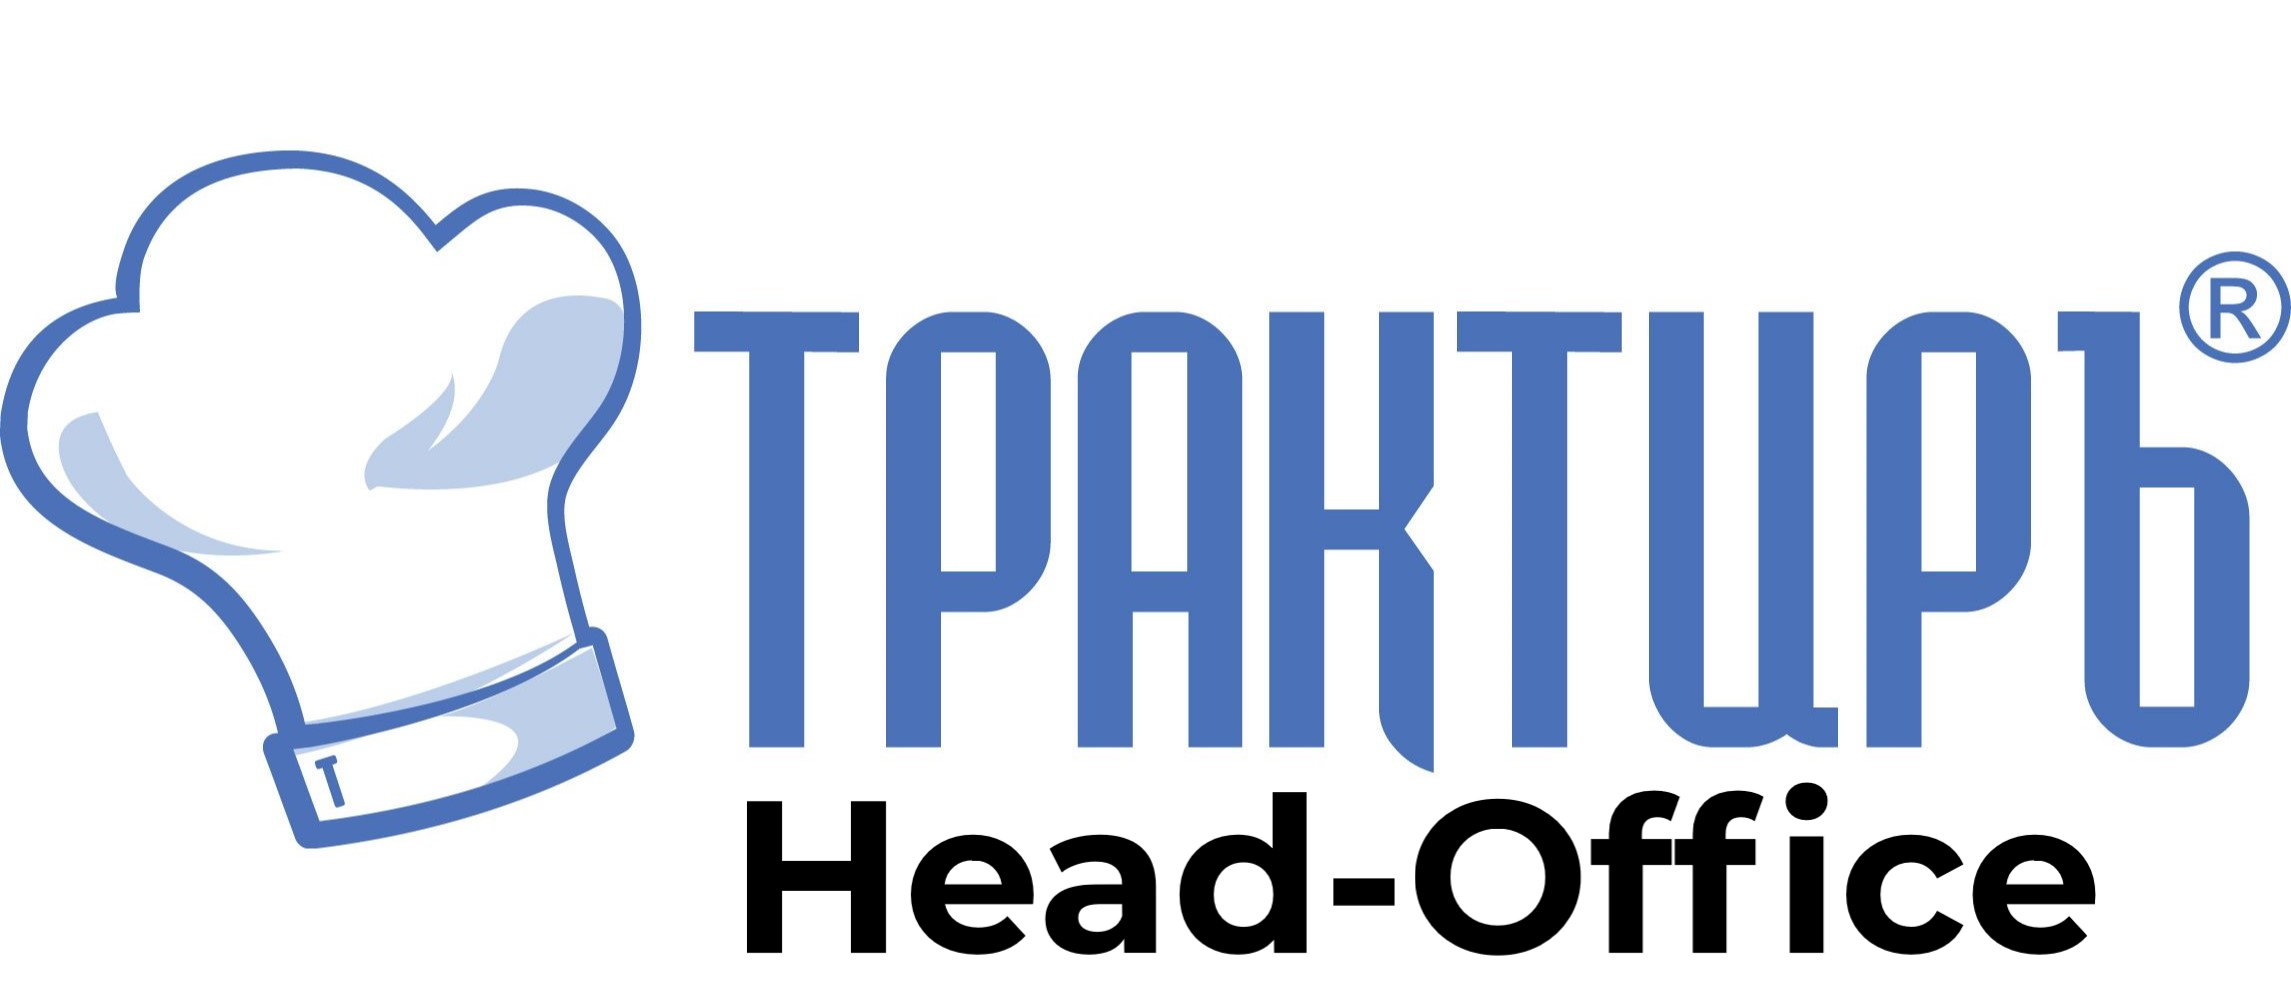 Трактиръ: Head-Office в Томске